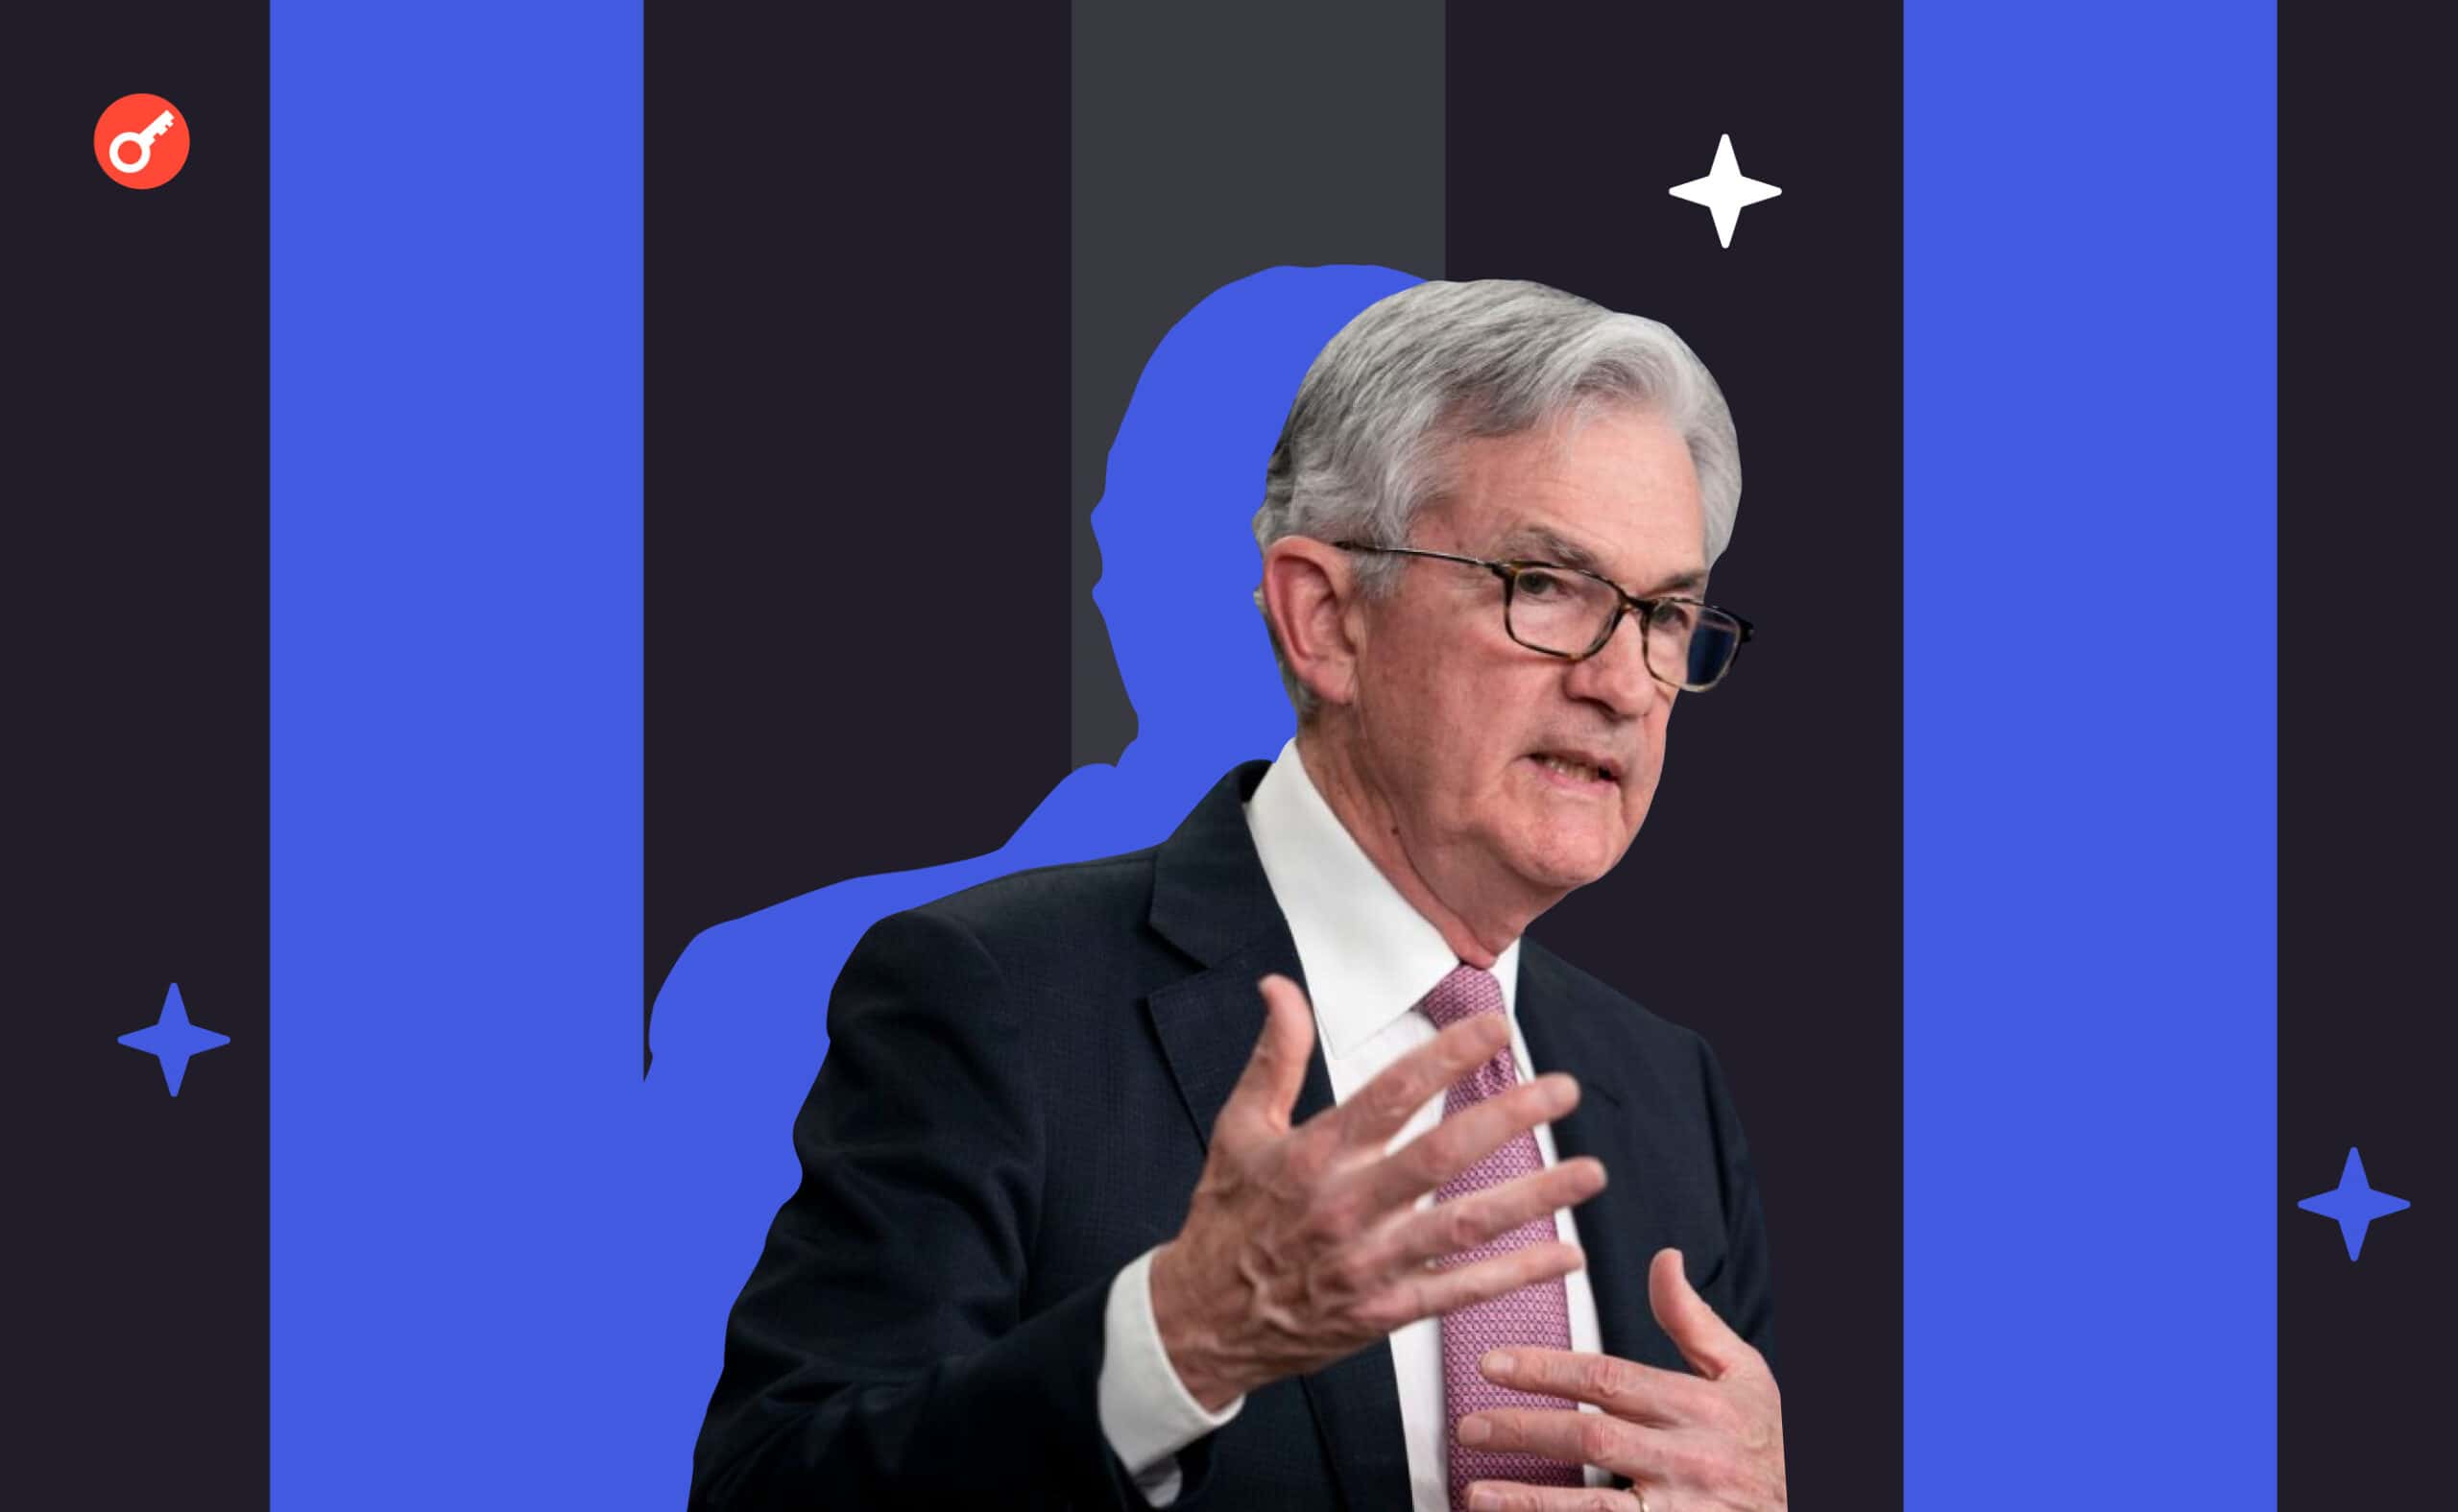 Wystąpienie Powella w FOMC: o systemie bankowym, «umiarkowanej» recesji i przyszłym kursie Fedu. Główny kolaż wiadomości.